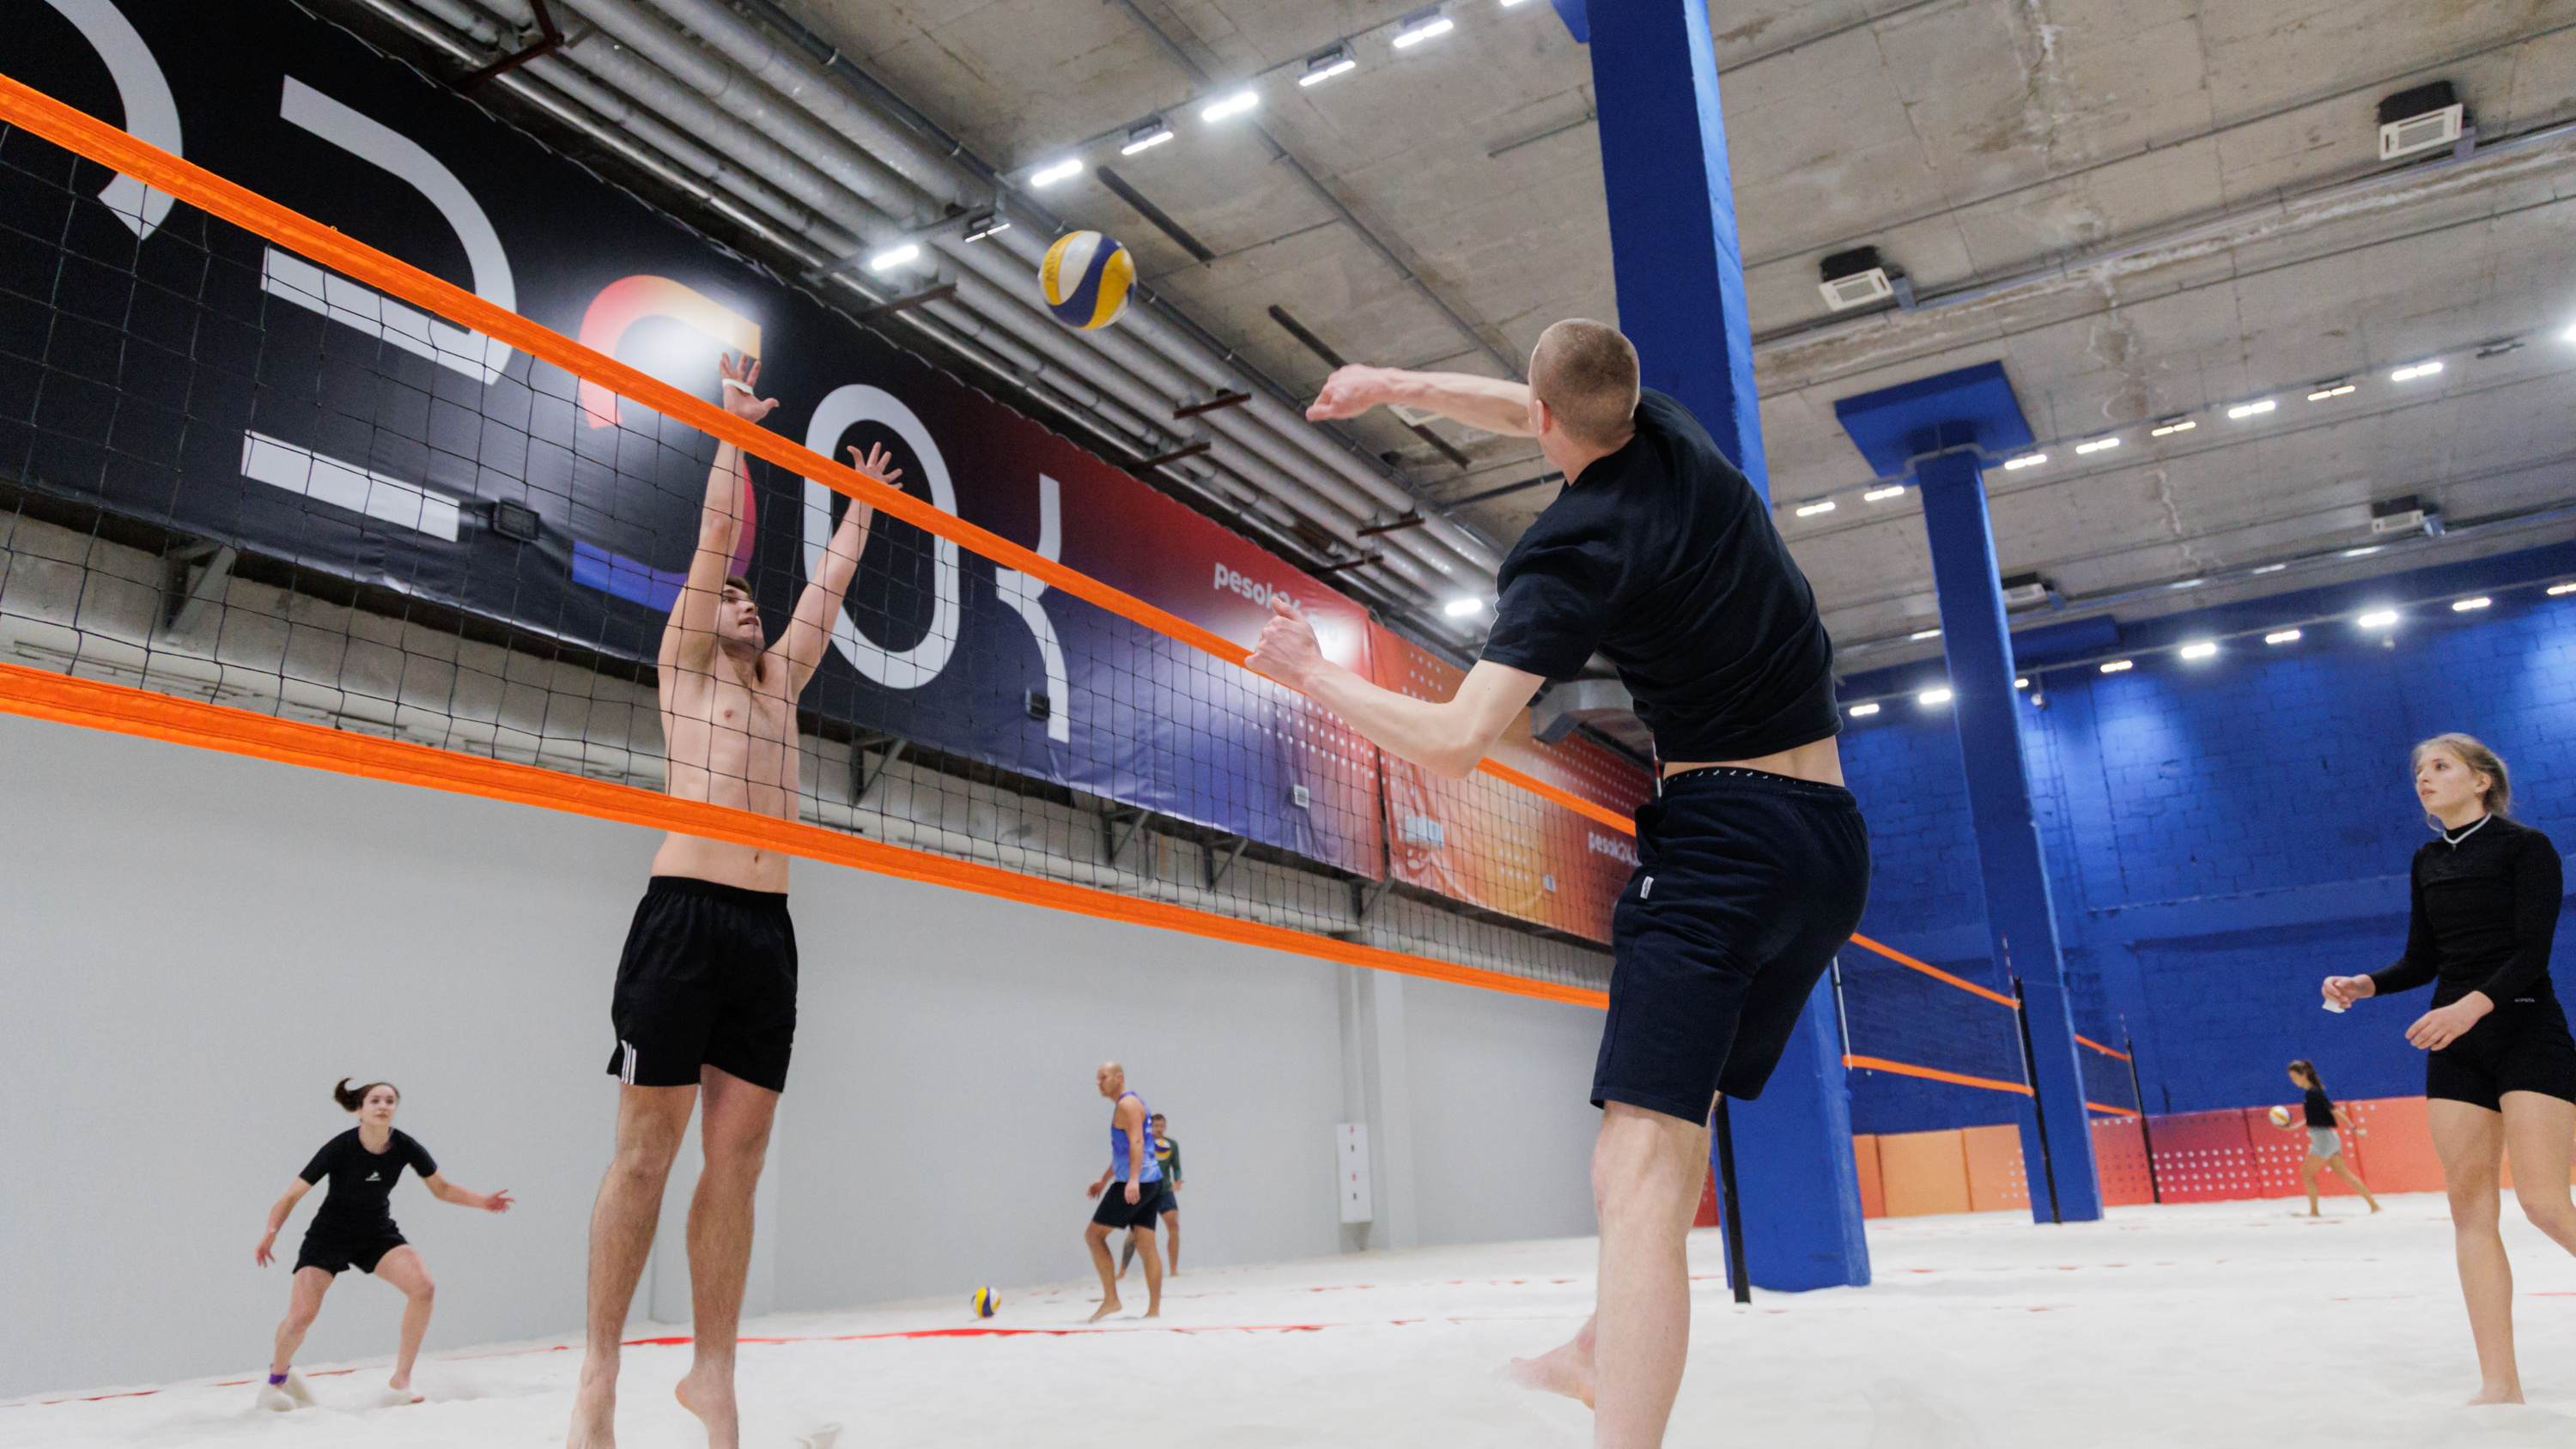 В Красноярске построили самый большой за Уралом корт для игры в пляжный волейбол. Показываем, что там находится